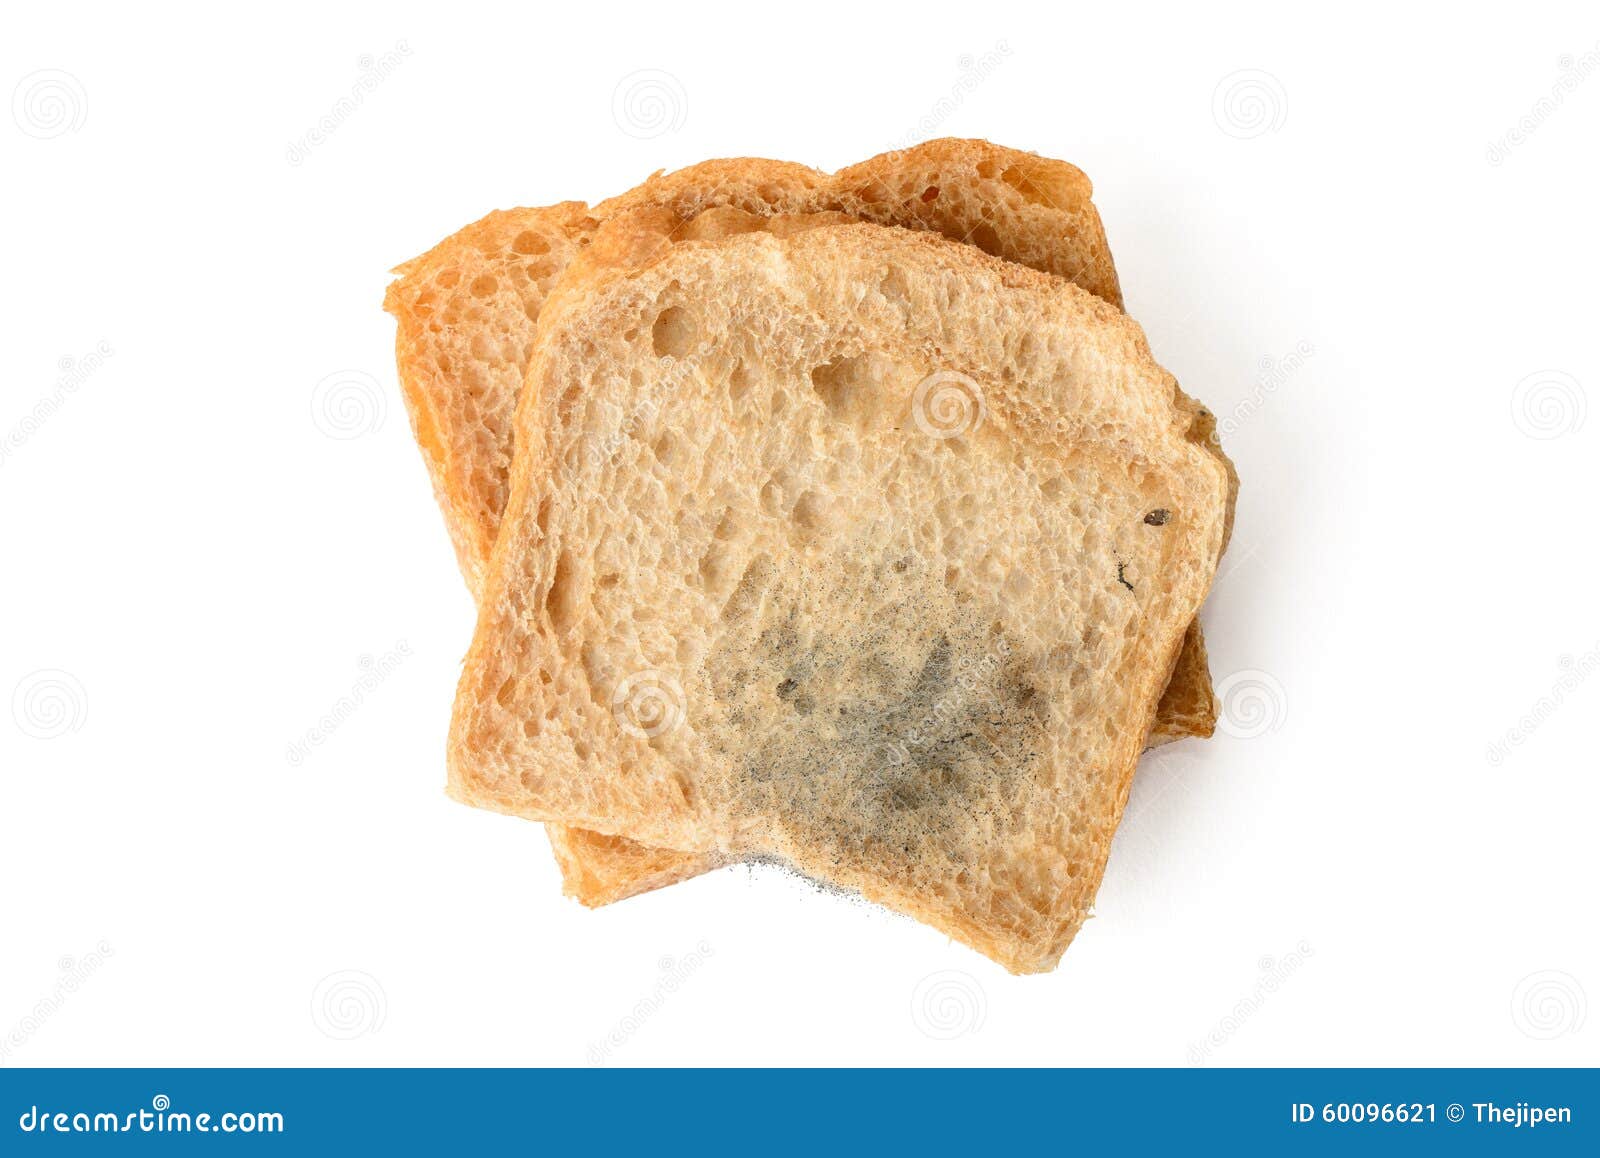 Кусочек хлеба с плесенью. Плесень на кусочке хлеба. Плесень на белом куске хлеба. Хлеб с плесенью на белом фоне. Плесневый хлеб на белом фоне.